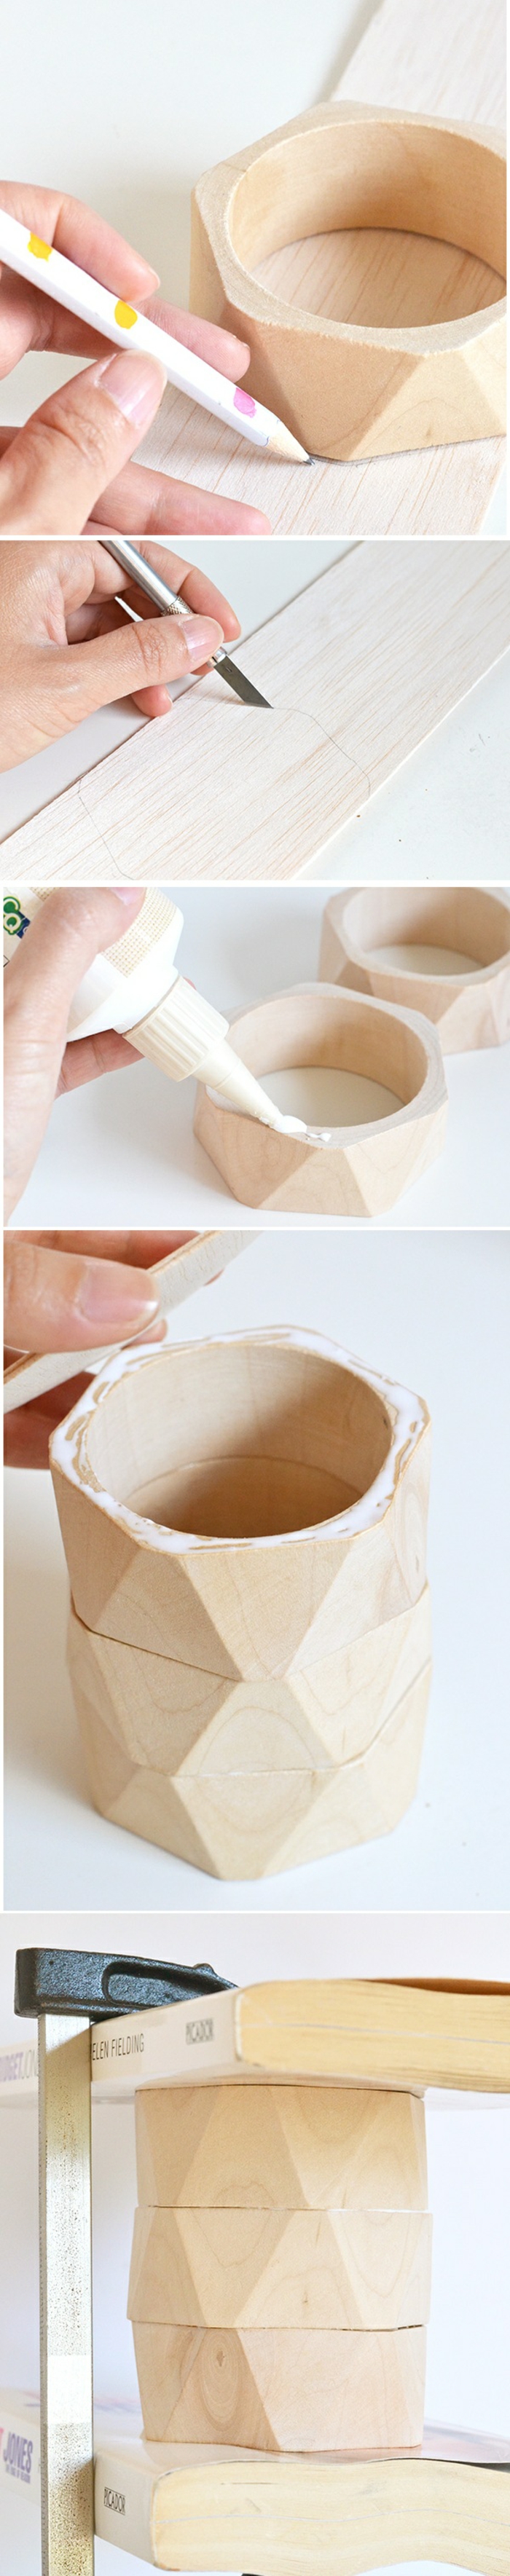 idée activité manuelle ado, tutoriel bricolage pot à crayon avec bracelets en bois, comment faire un pot à crayon